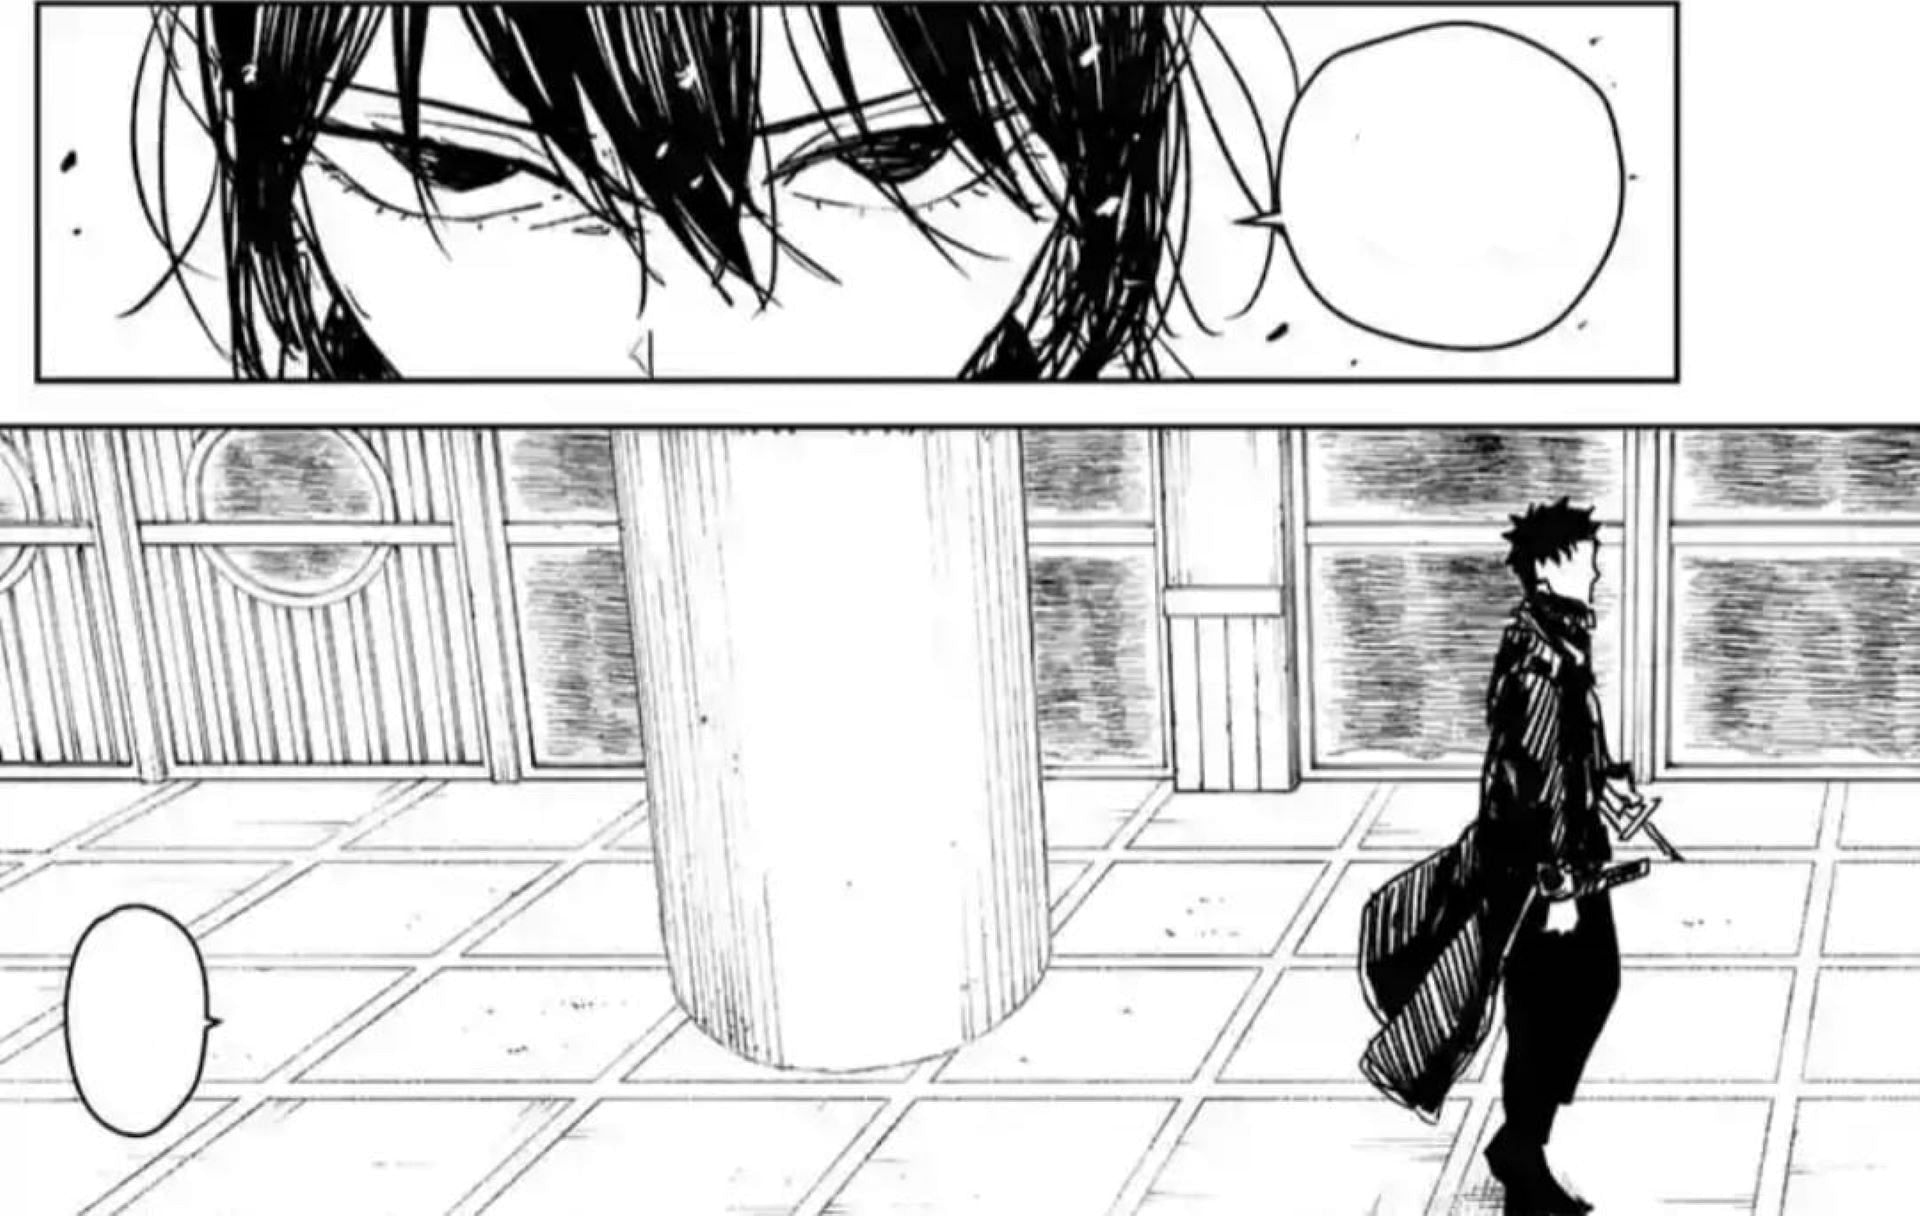 Hiyuki confronts Chihiro, as seen in the chapter (Image via Takeru Hokazono/Shueisha)